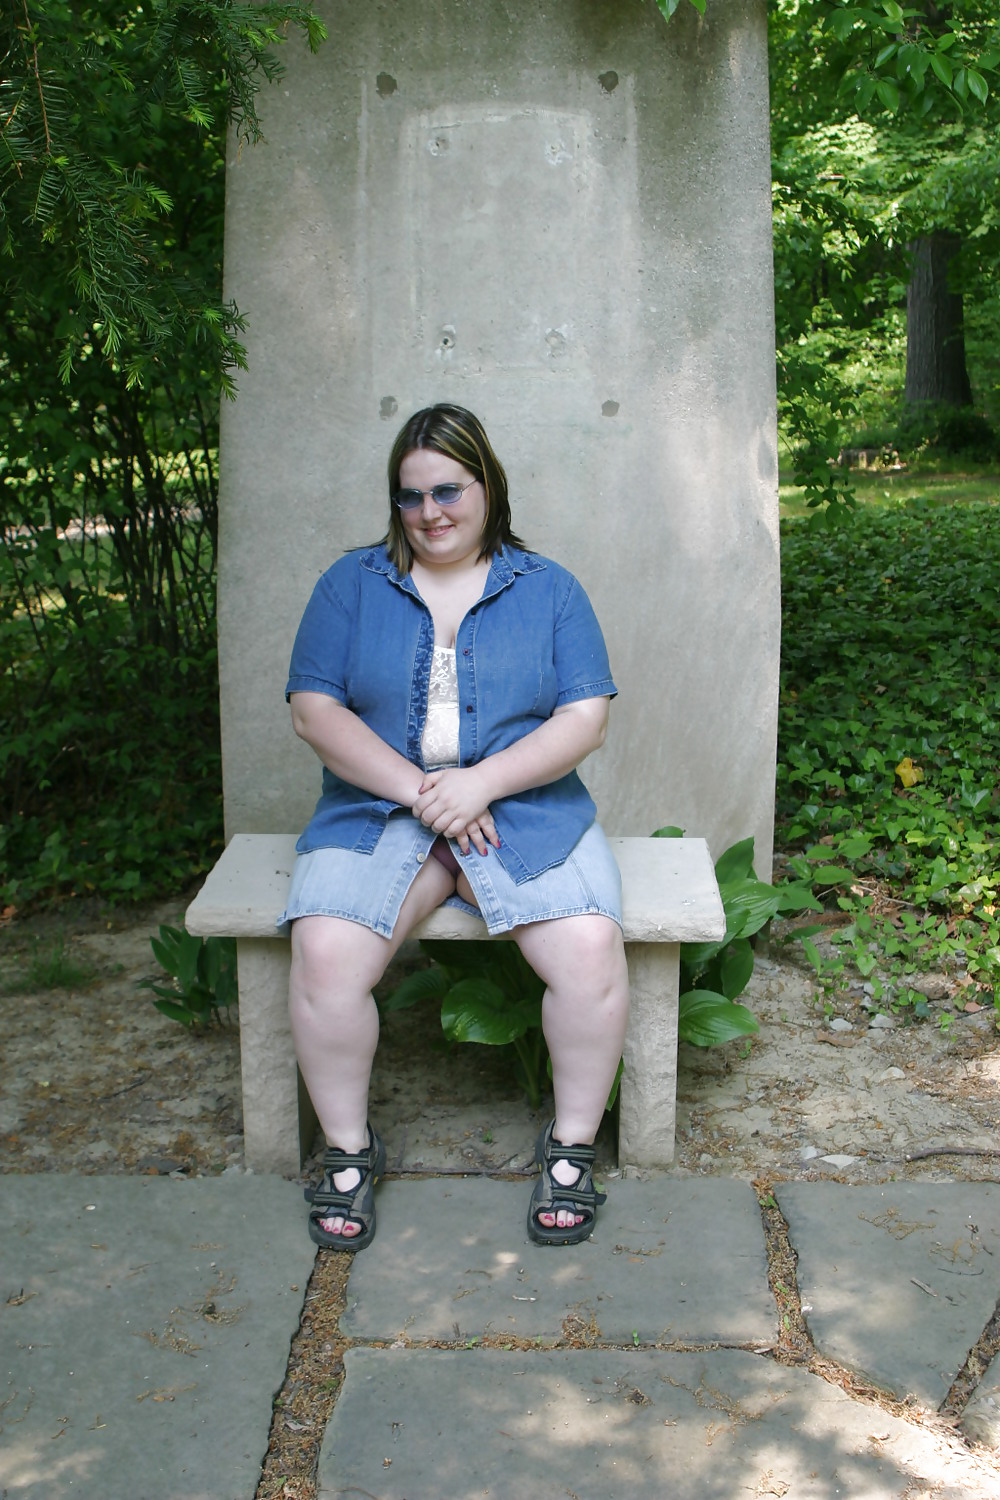 Kaylee at Cleveland park #17959802